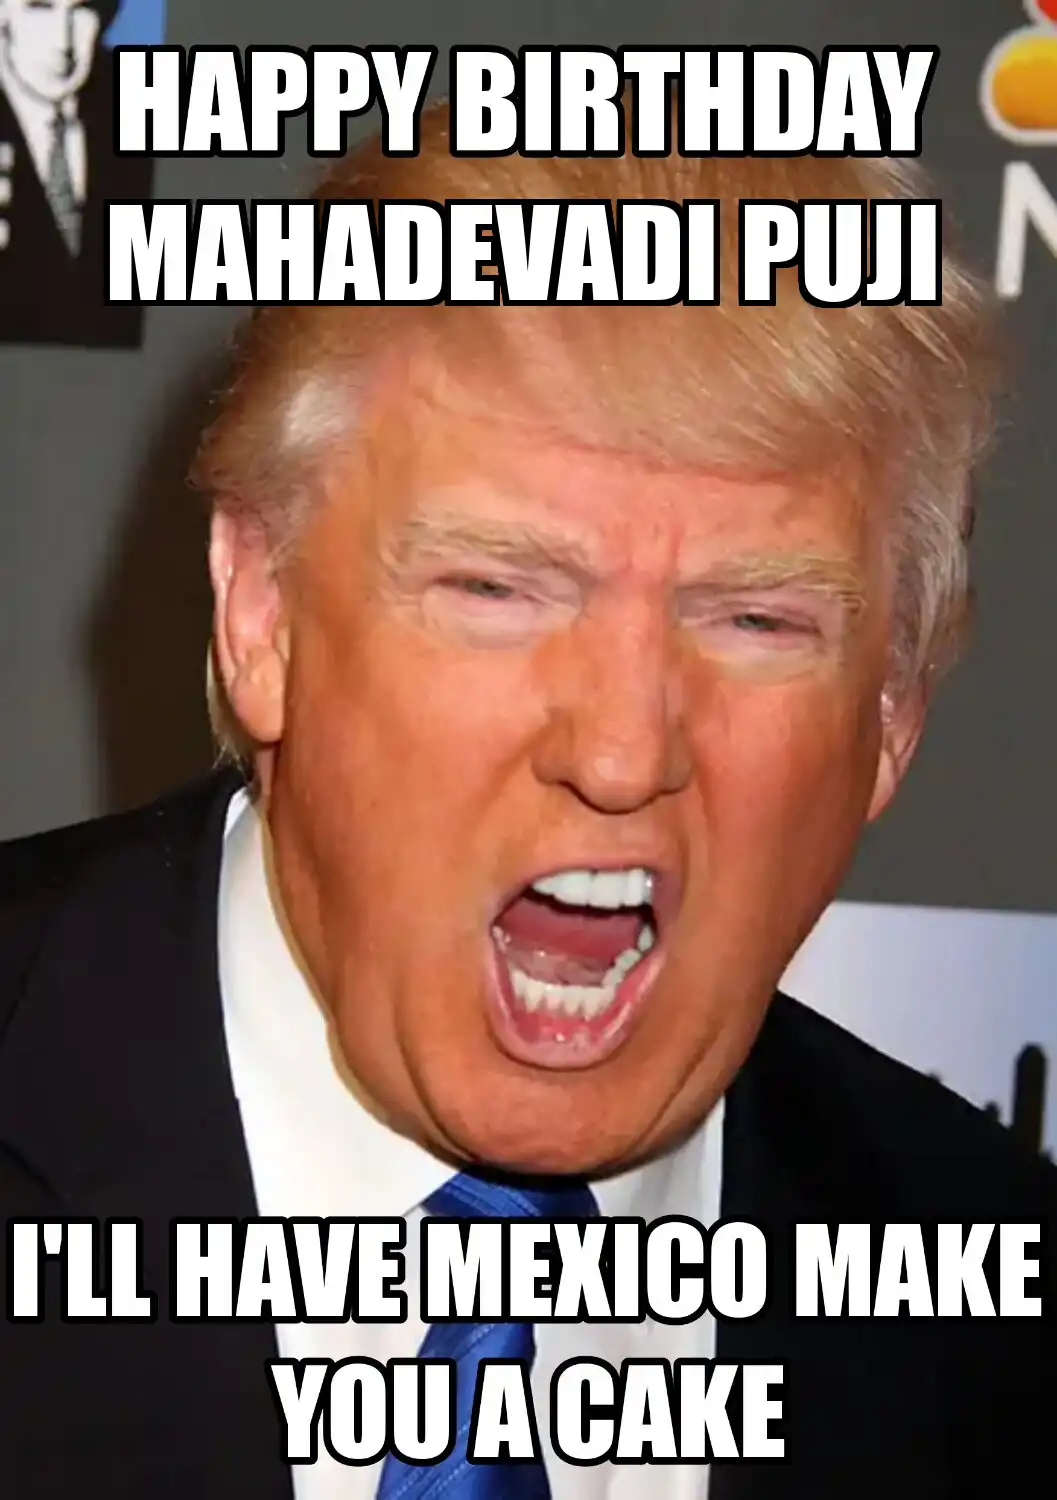 Happy Birthday Mahadevadi Puji Mexico Make You A Cake Meme